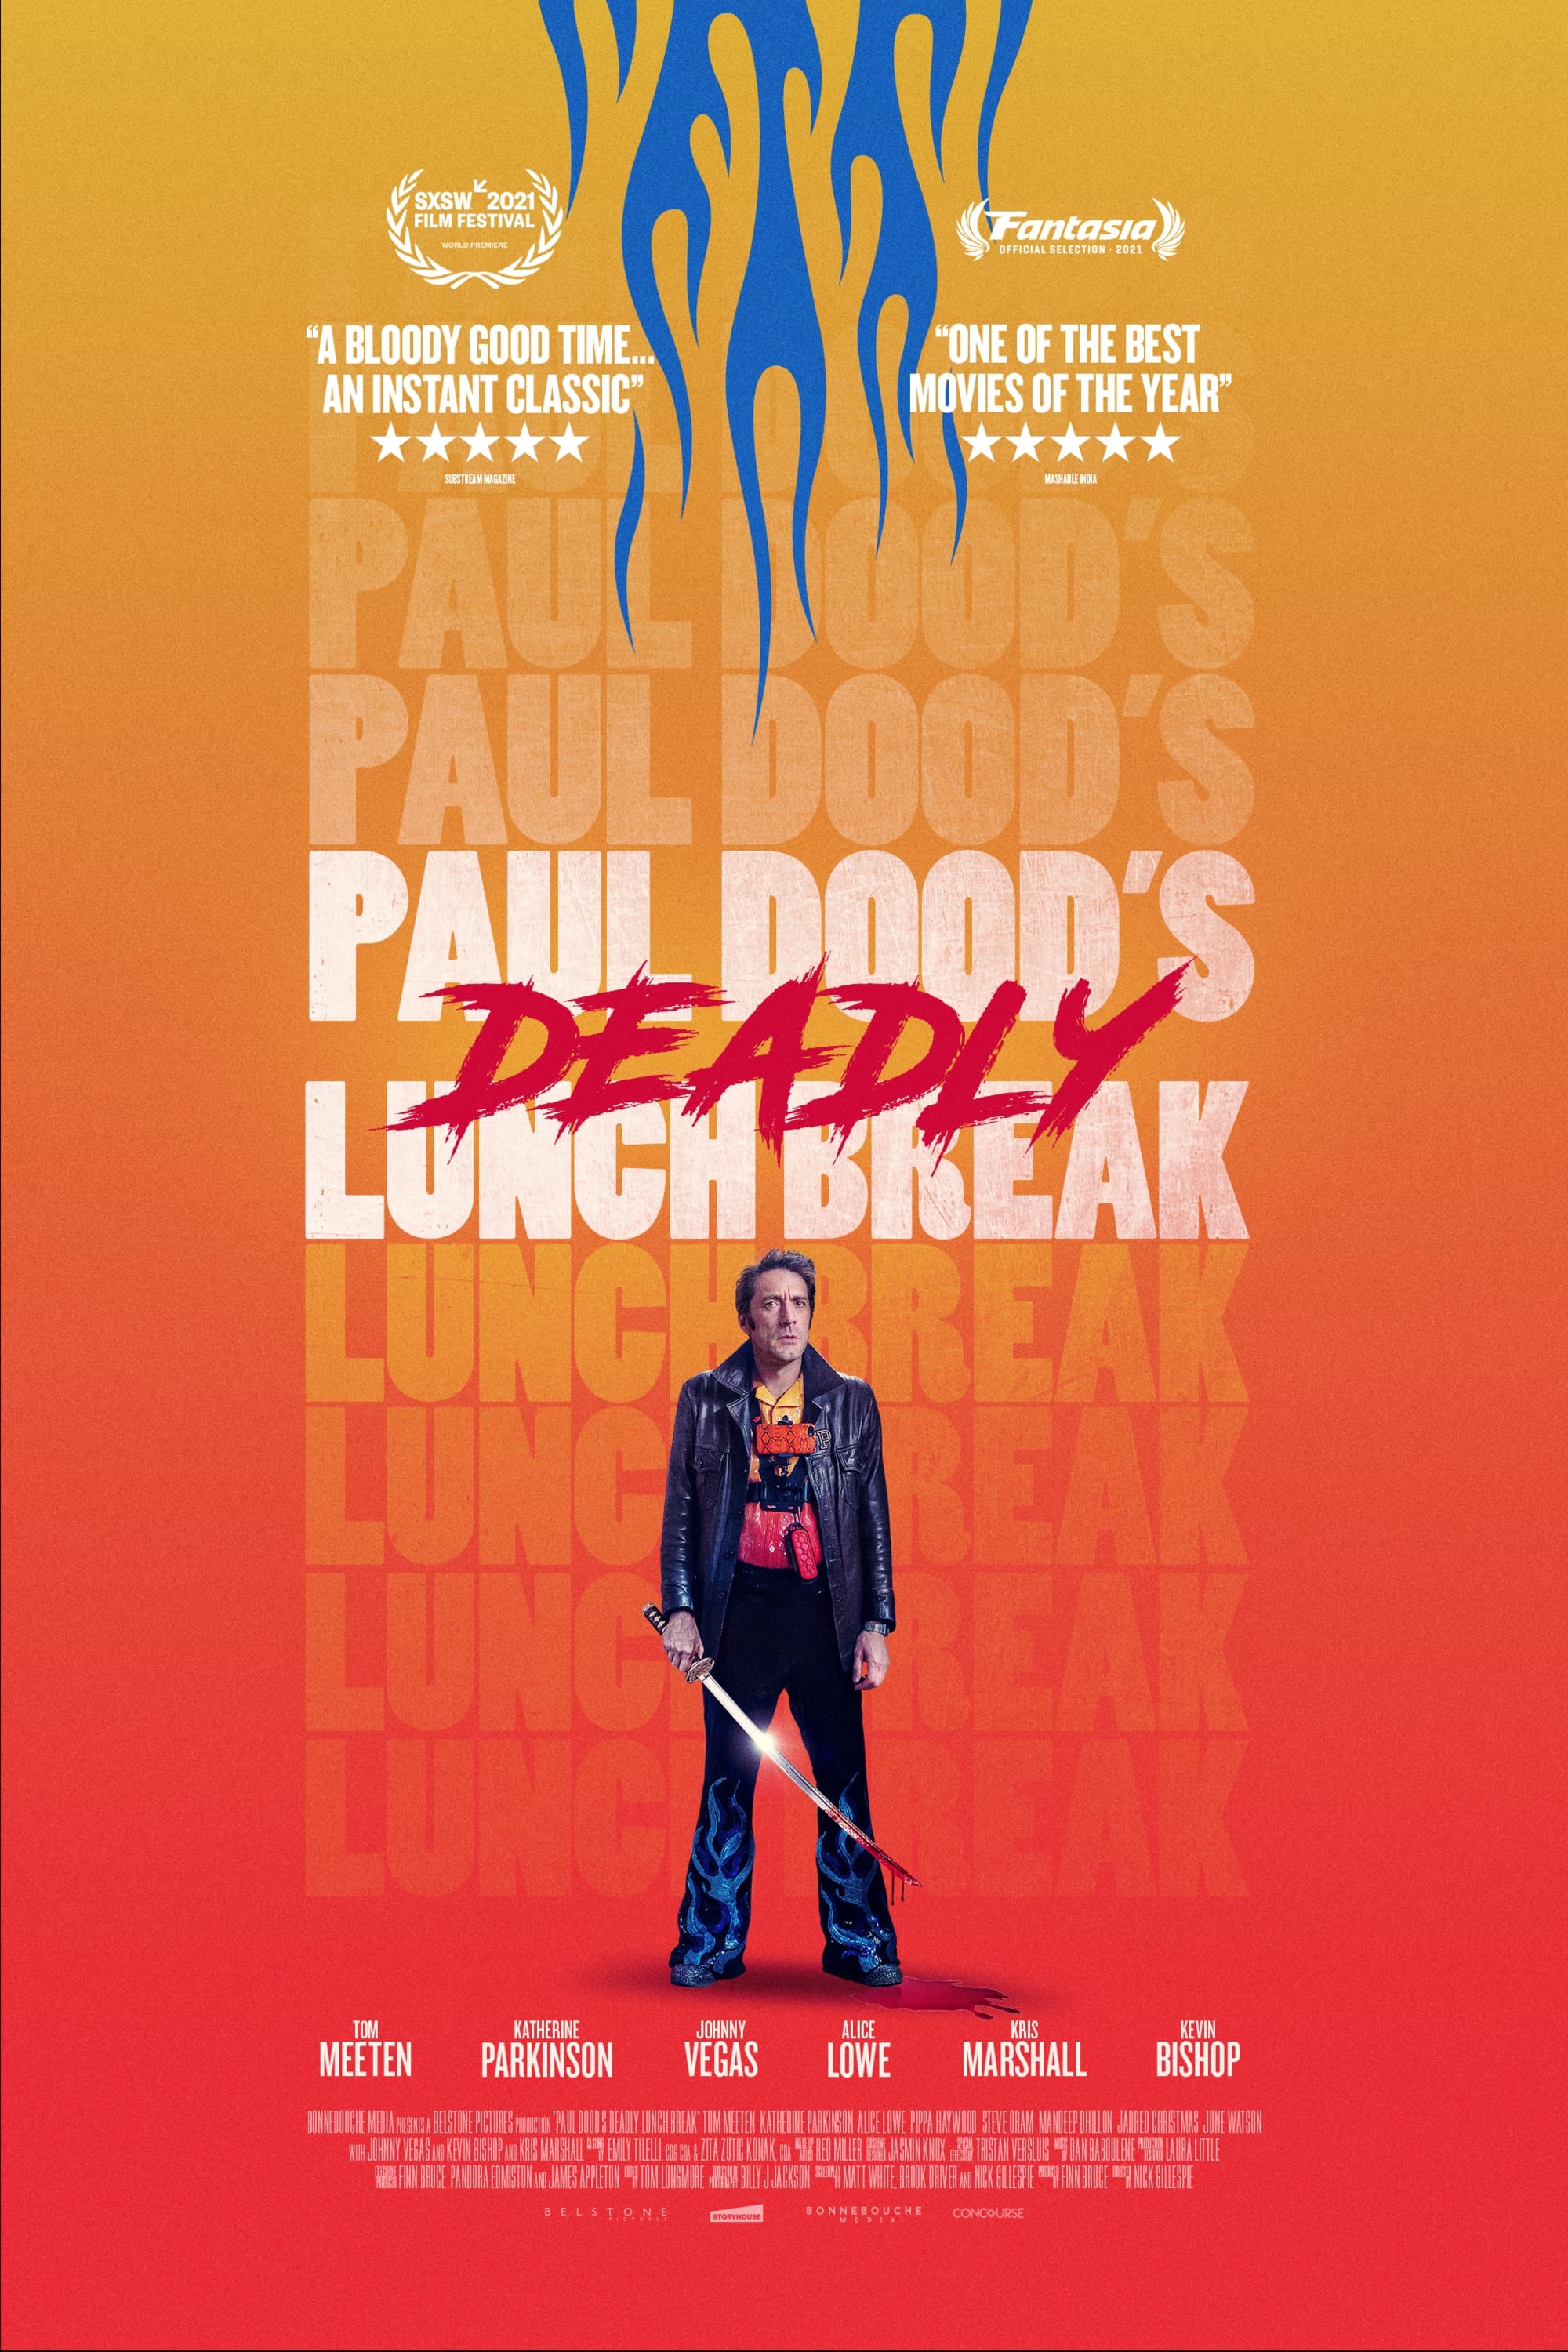 Paul Dood’s Deadly Lunch Break film